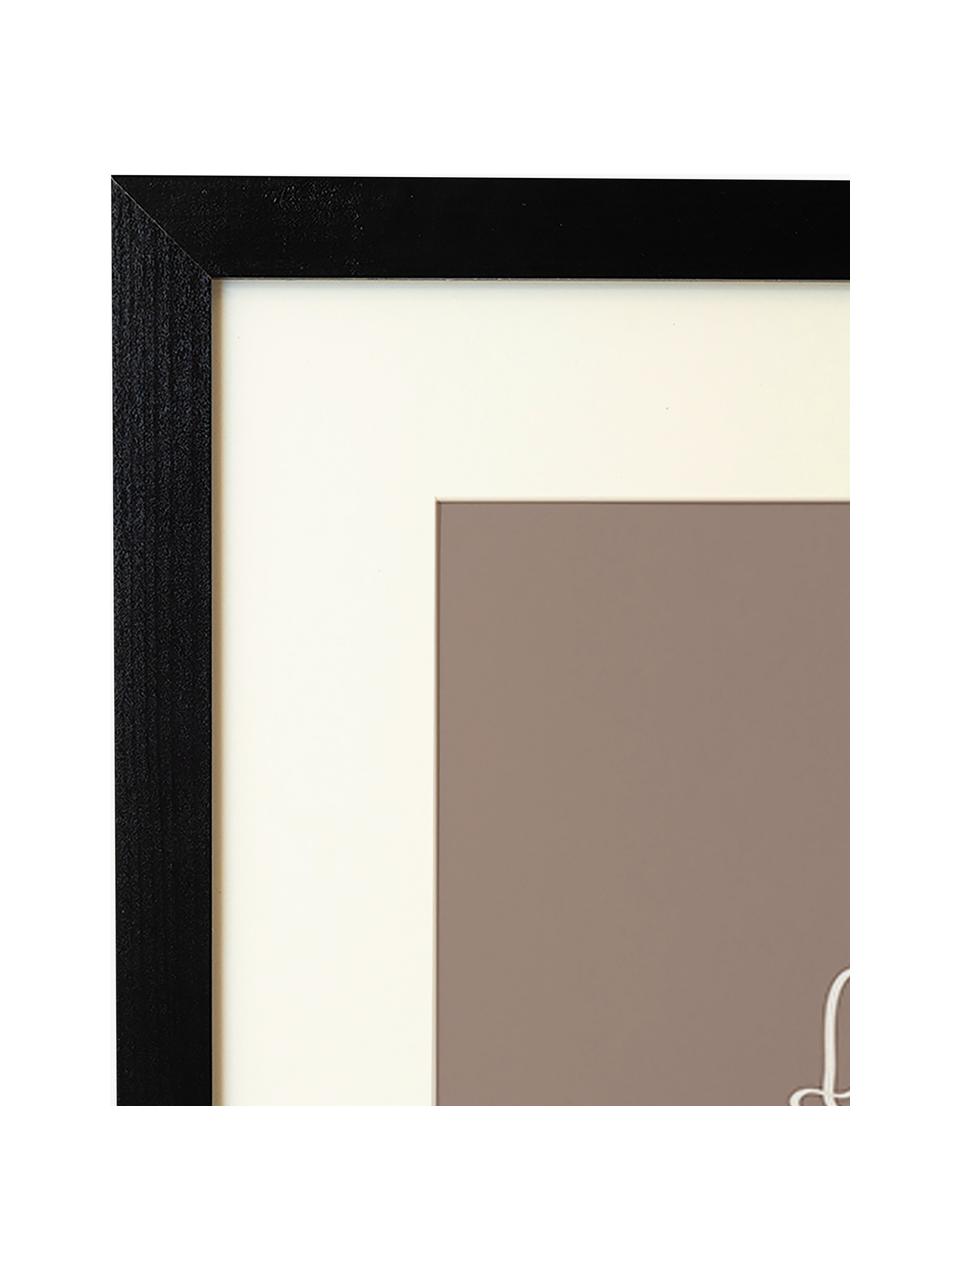 Gerahmter Digitaldruck Minimal Line Face, Rahmen: Buchenholz, FSC zertifizi, Bild: Digitaldruck auf Papier, , Front: Acrylglas, Schwarz, Nougat, B 33 x H 43 cm